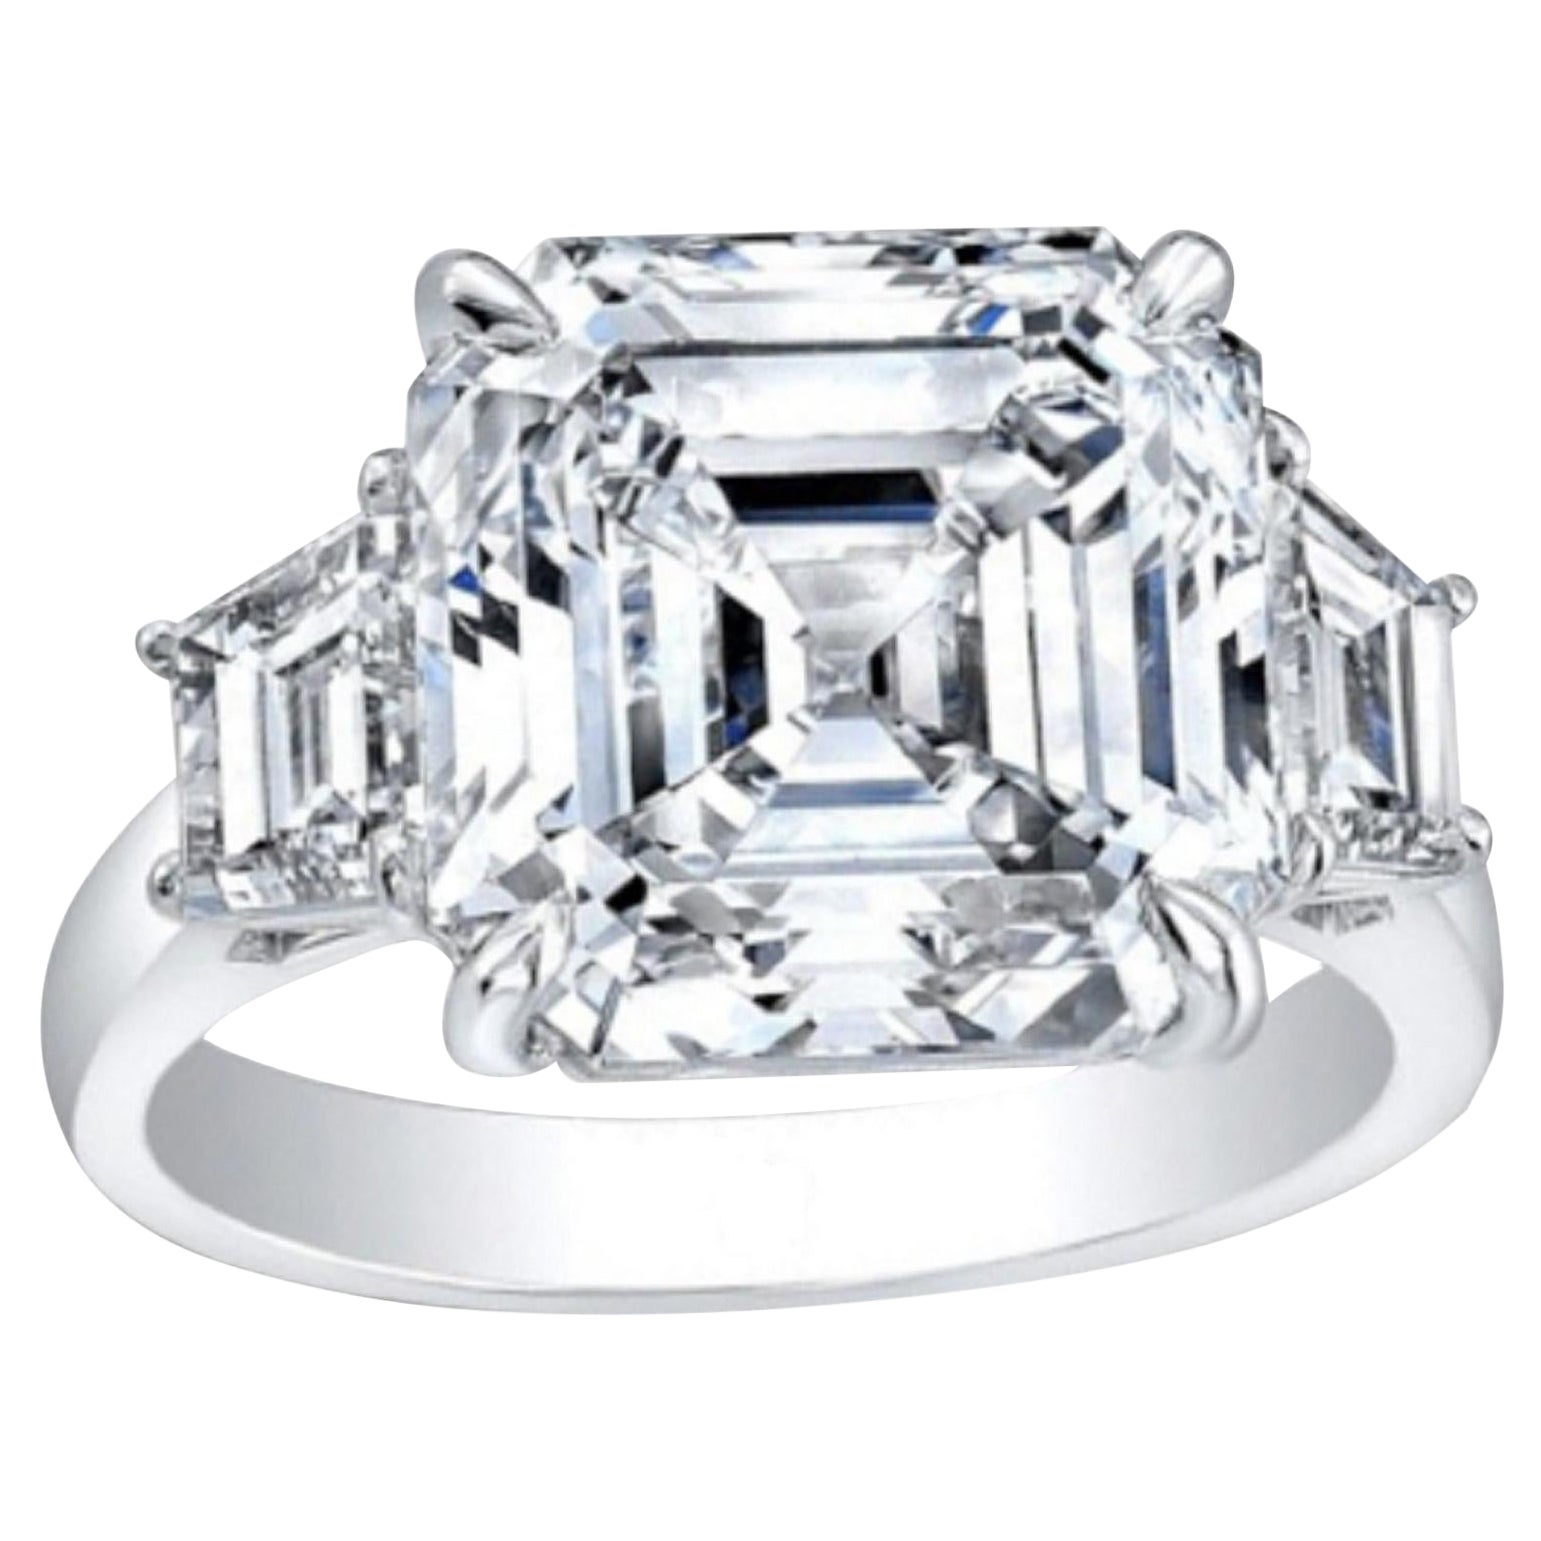 GIA Certified 4.01 Carat Asscher Cut Diamond 18K Gold Engagement Ring